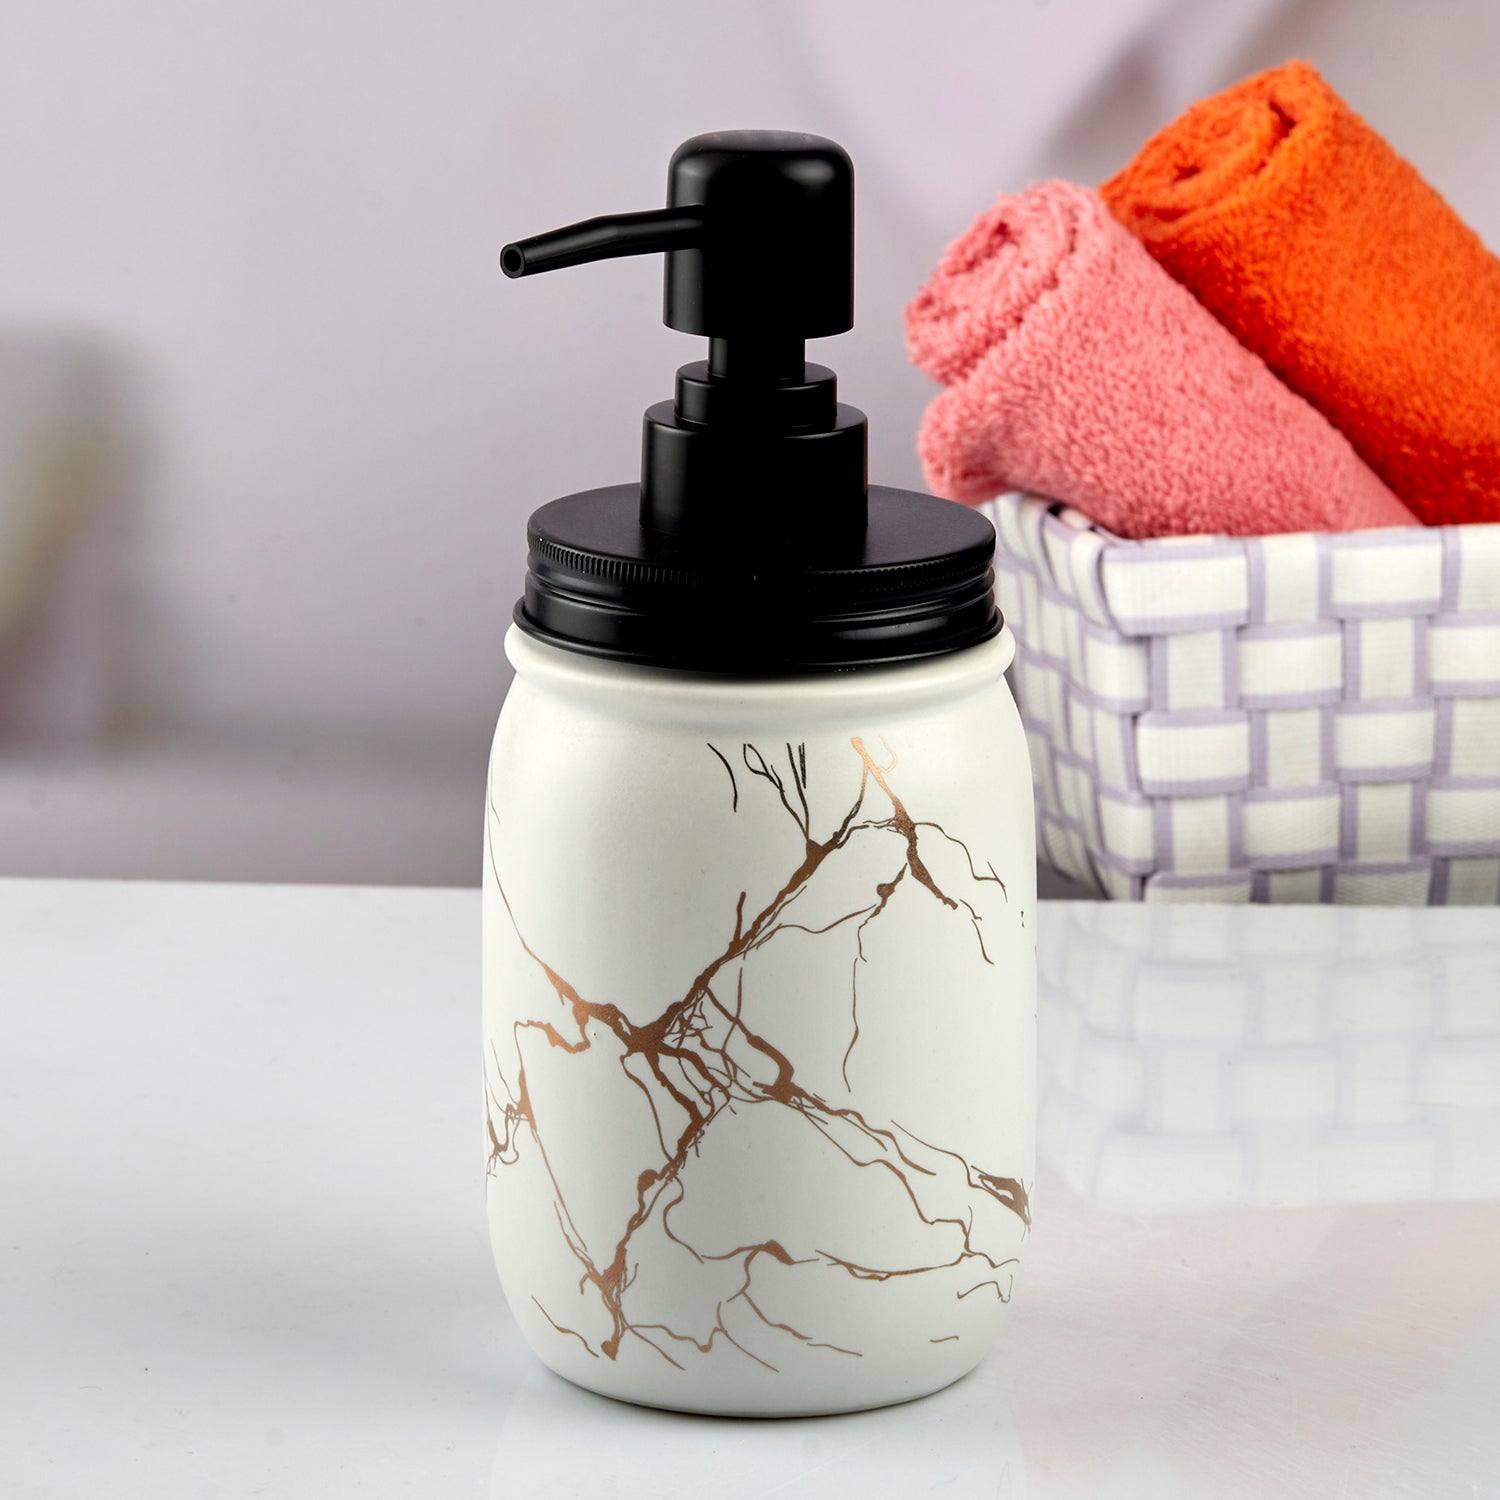 Ceramic Soap Dispenser liquid handwash pump for Bathroom, Set of 1, White (10736)